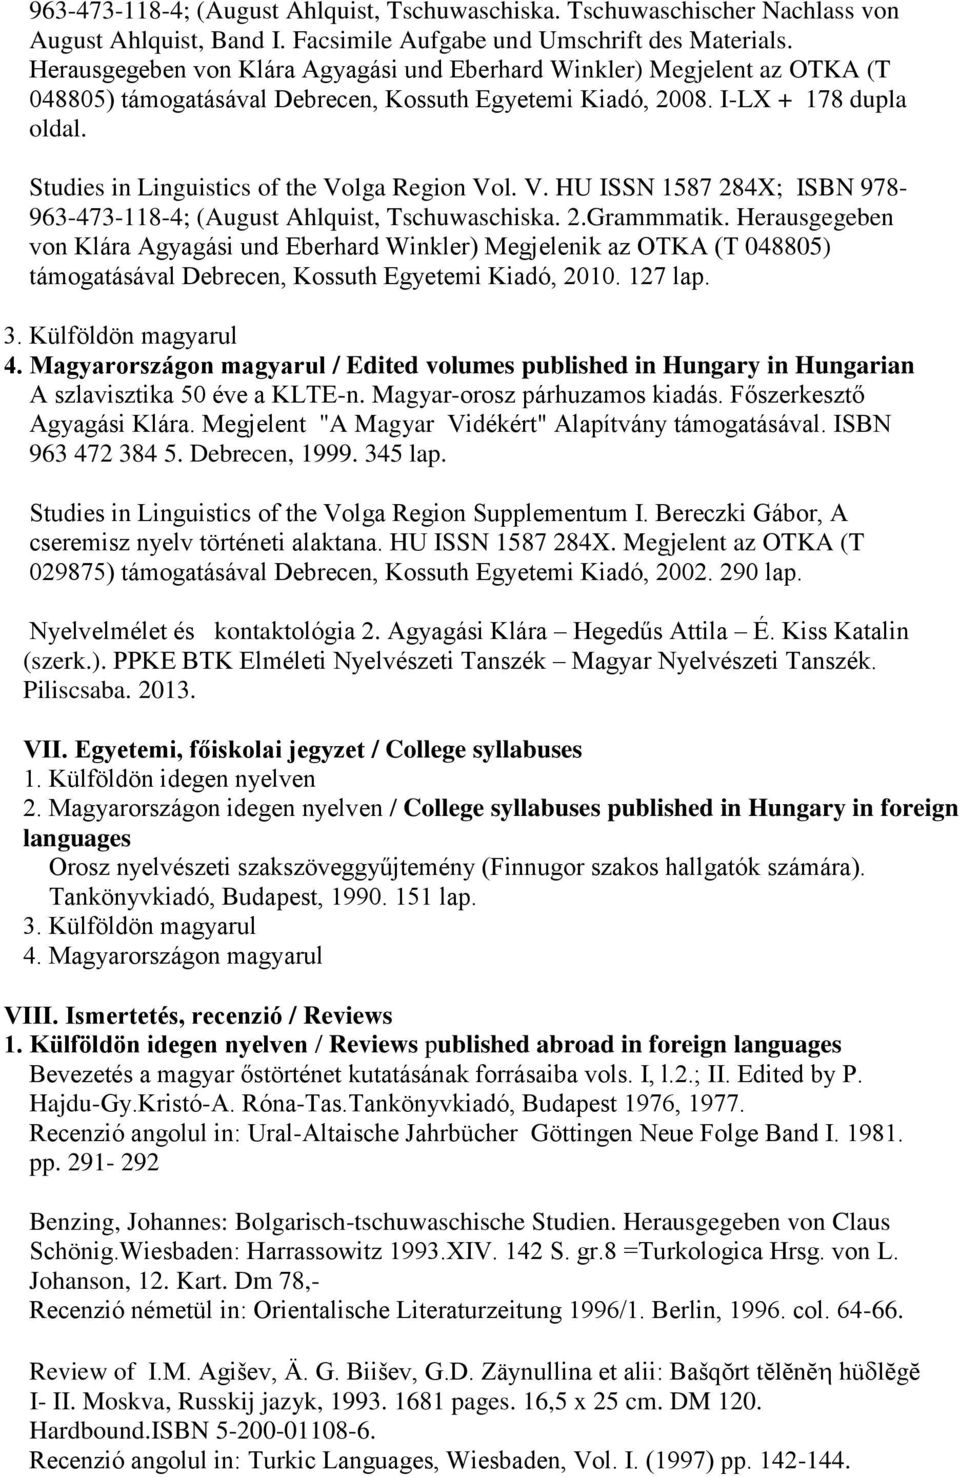 Studies in Linguistics of the Volga Region Vol. V. HU ISSN 1587 284X; ISBN 978-963-473-118-4; (August Ahlquist, Tschuwaschiska. 2.Grammmatik.